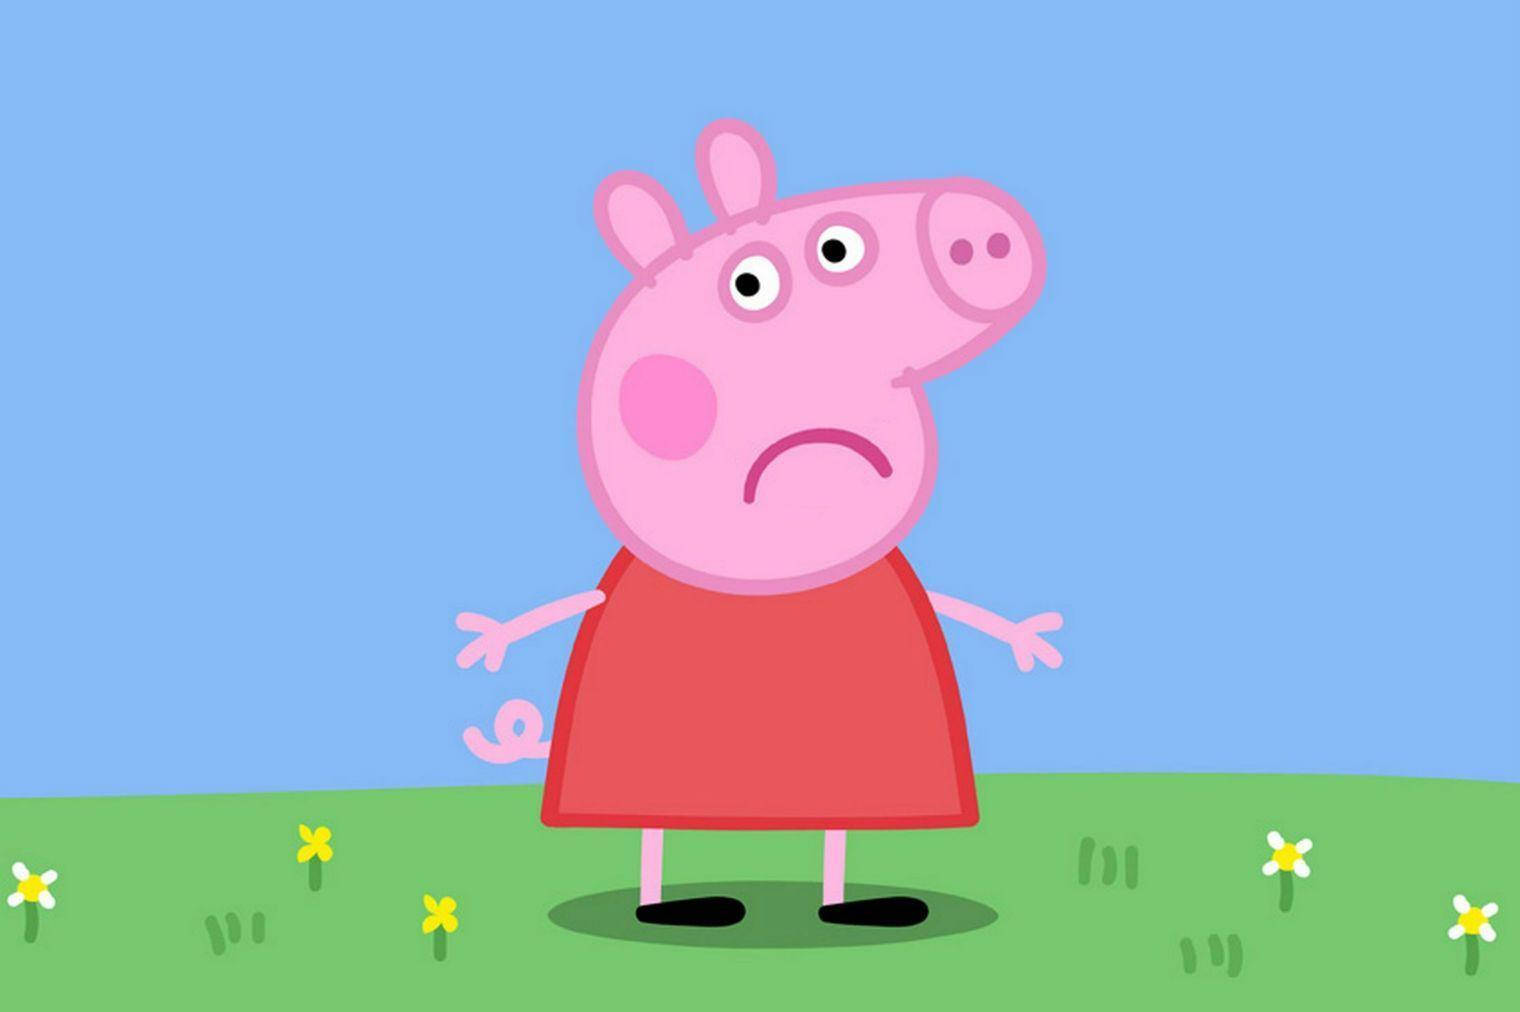 Sad Peppa Pig Tablet